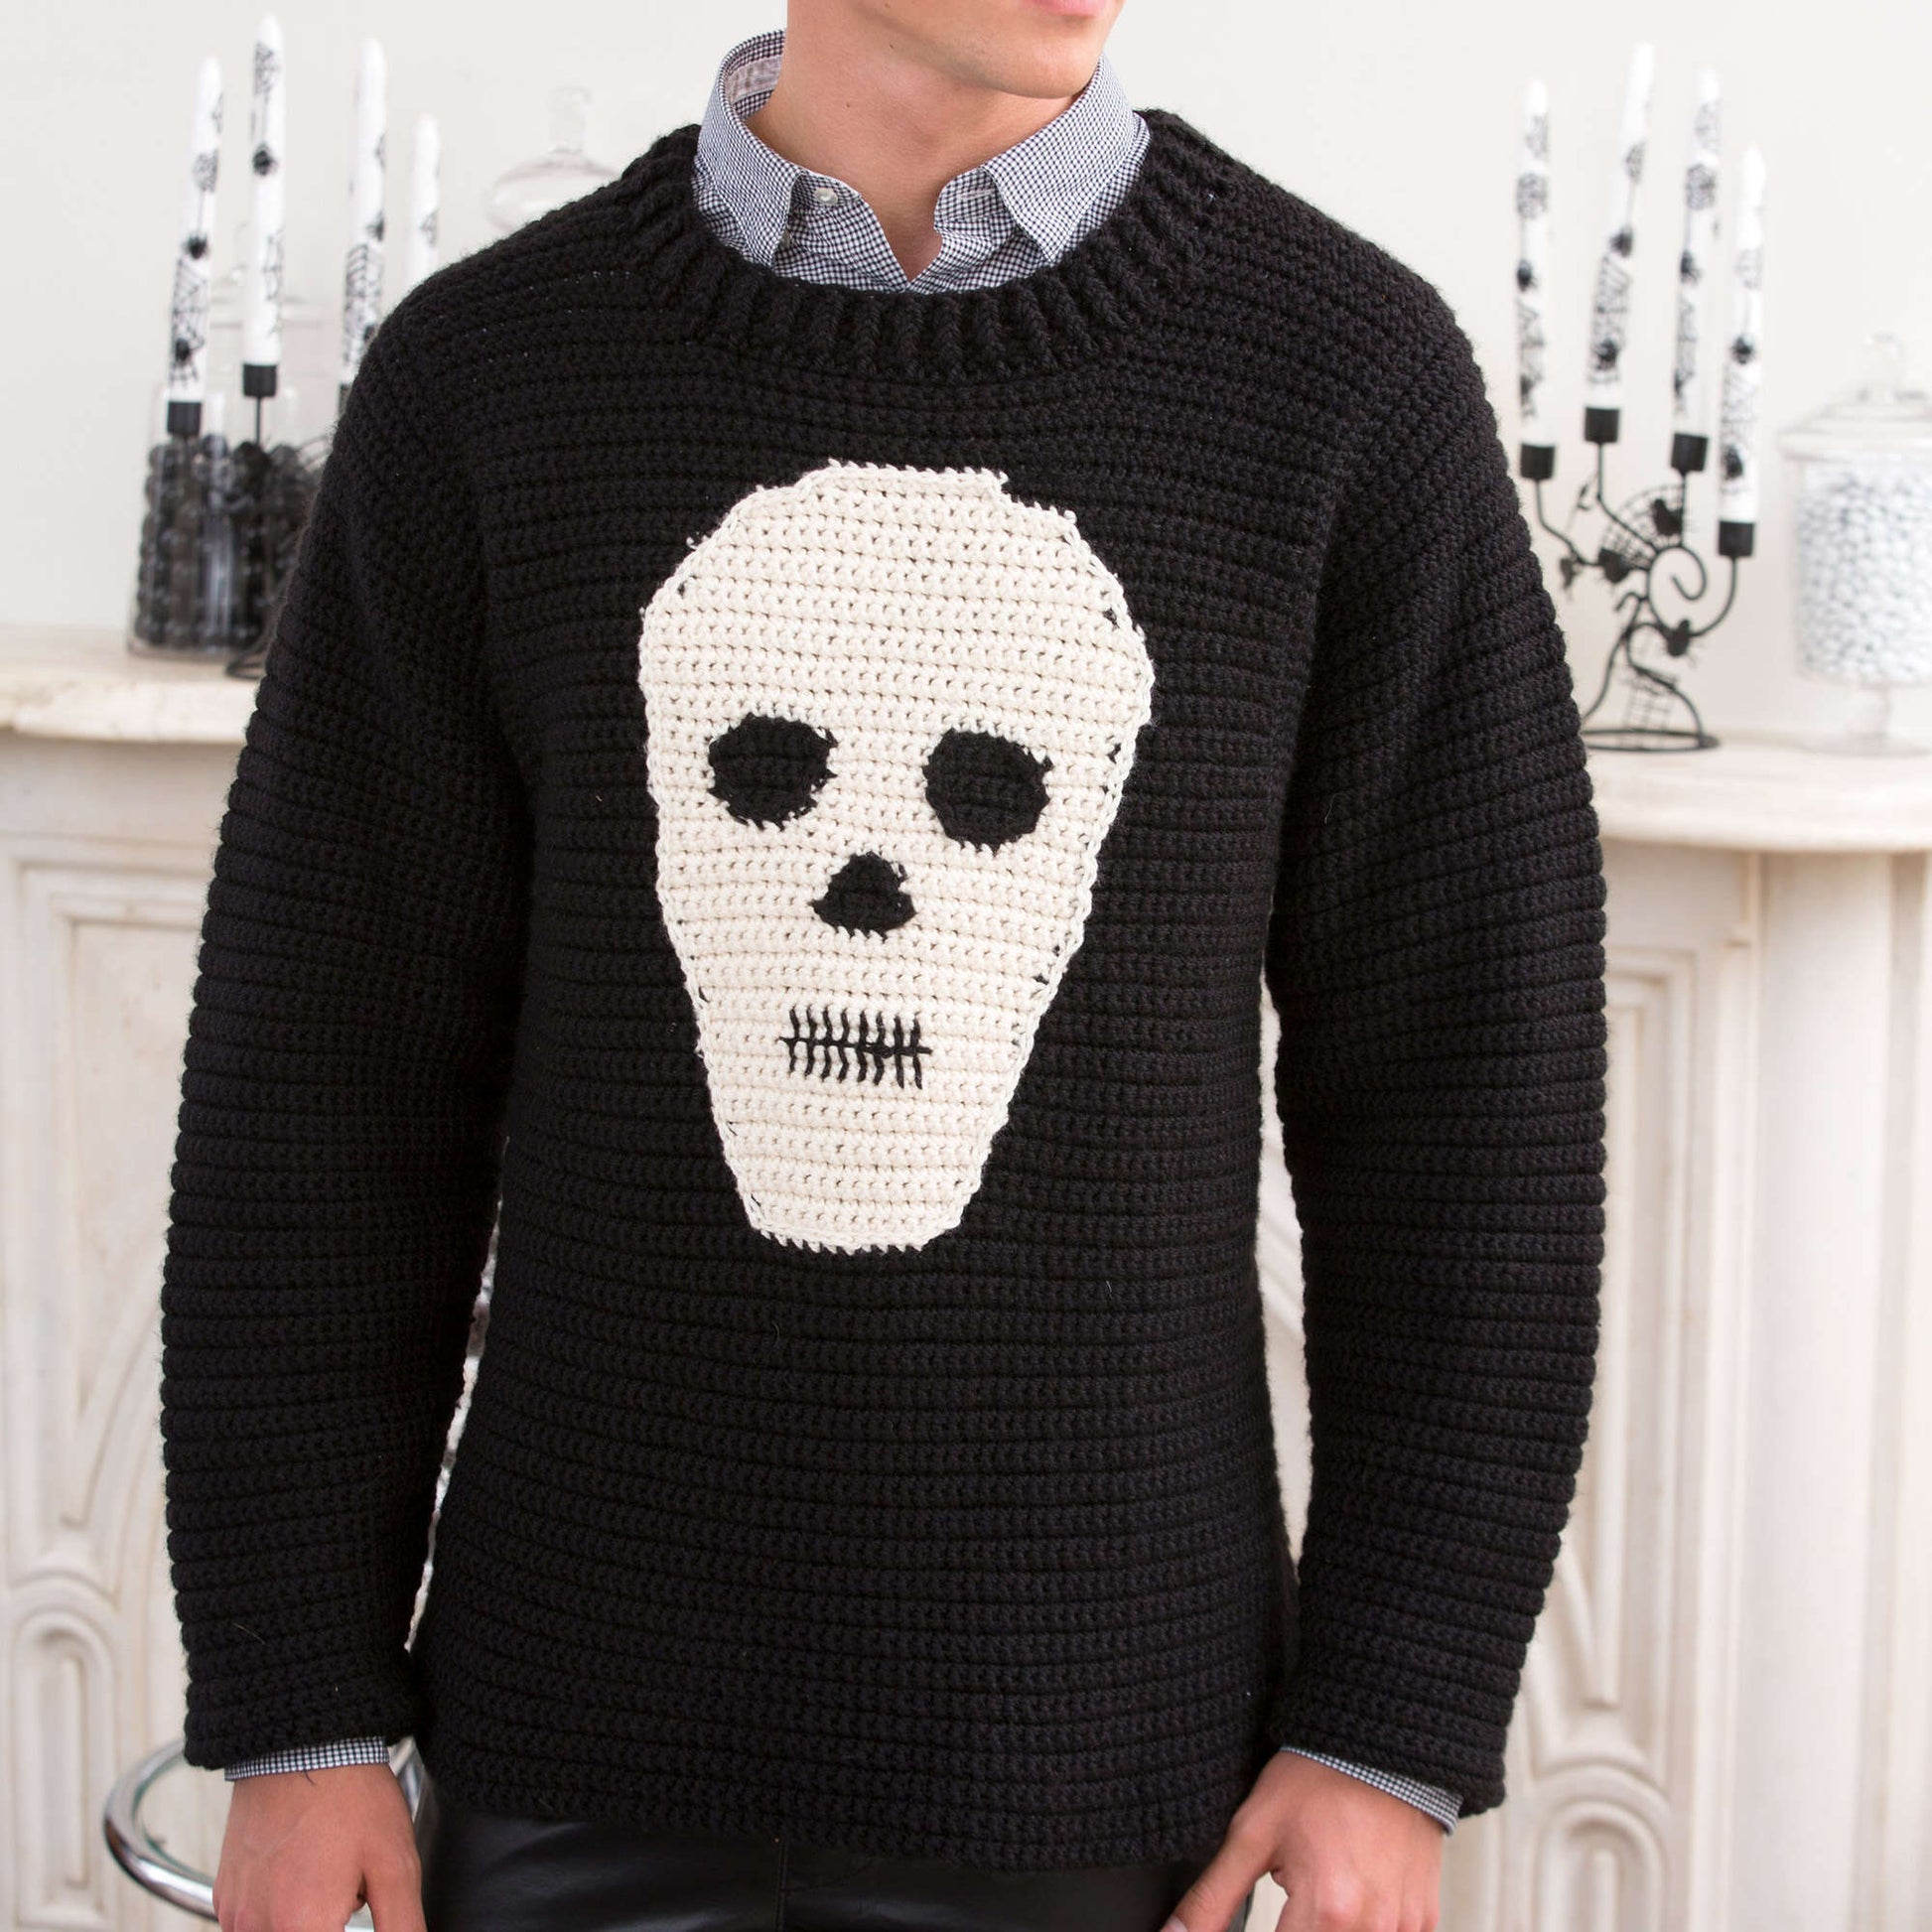 Free Red Heart Skull Sweater Crochet Pattern